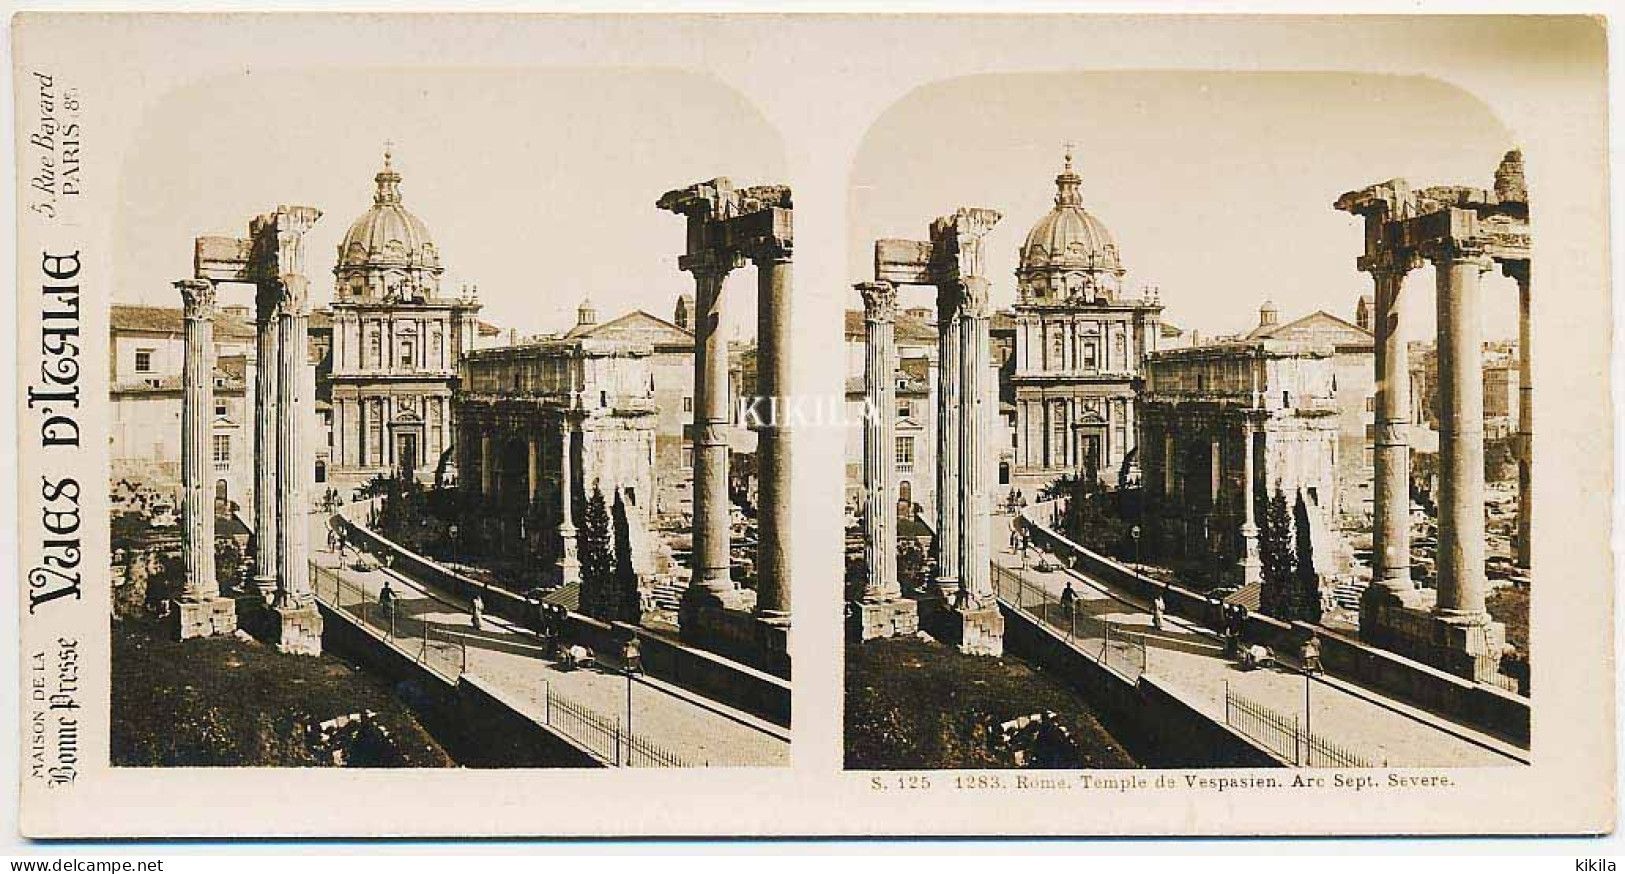 Photo Stéréoscopique 7,2x7,5cm Carte 17,2x8,9cm Vues D'Italie S. 125 - 1283 ROME. Temple De Vespasien. Arc Septime* - Photos Stéréoscopiques